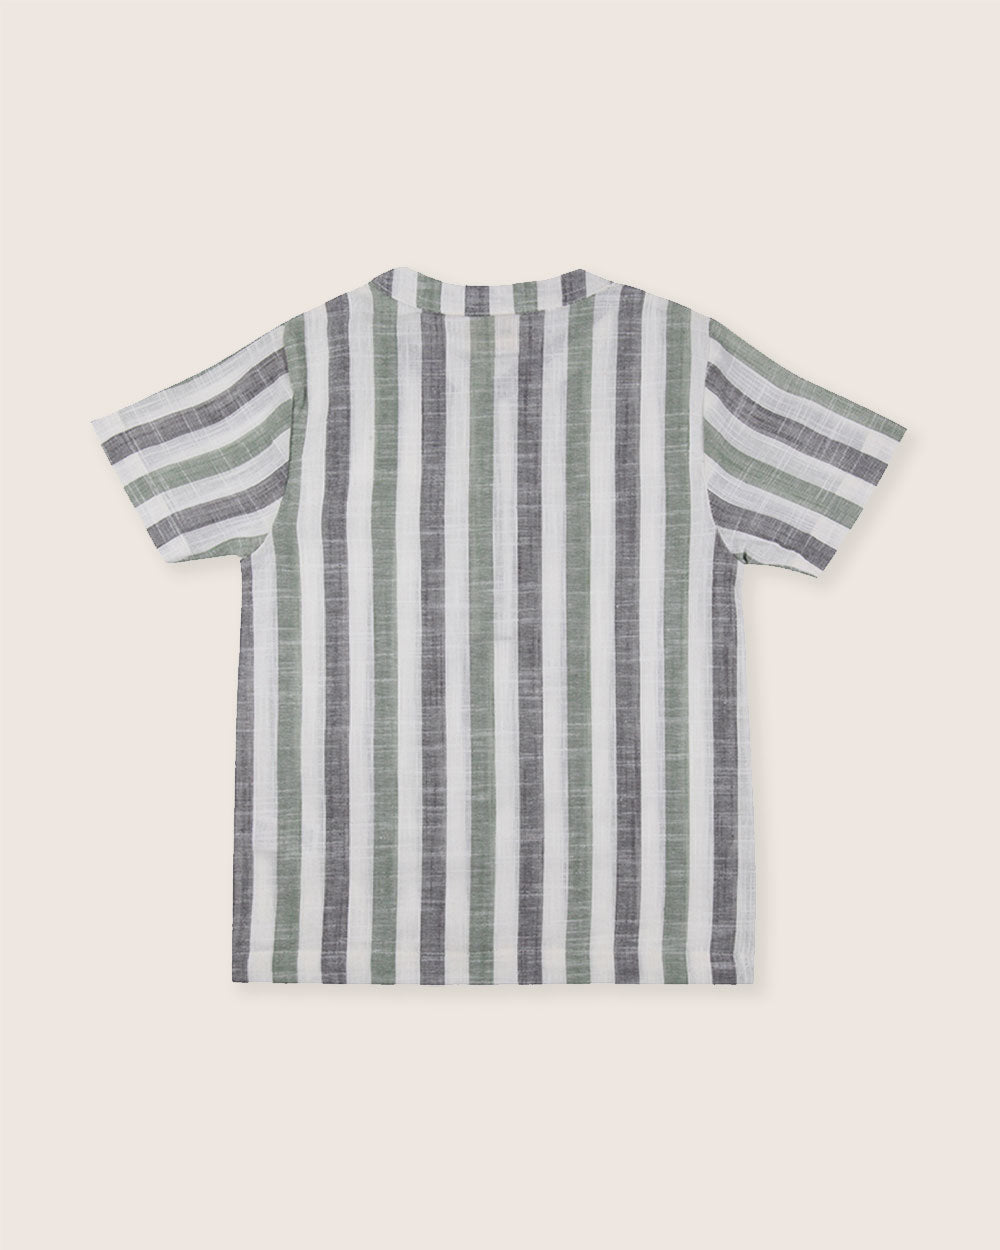 Woven Stripe Shirt